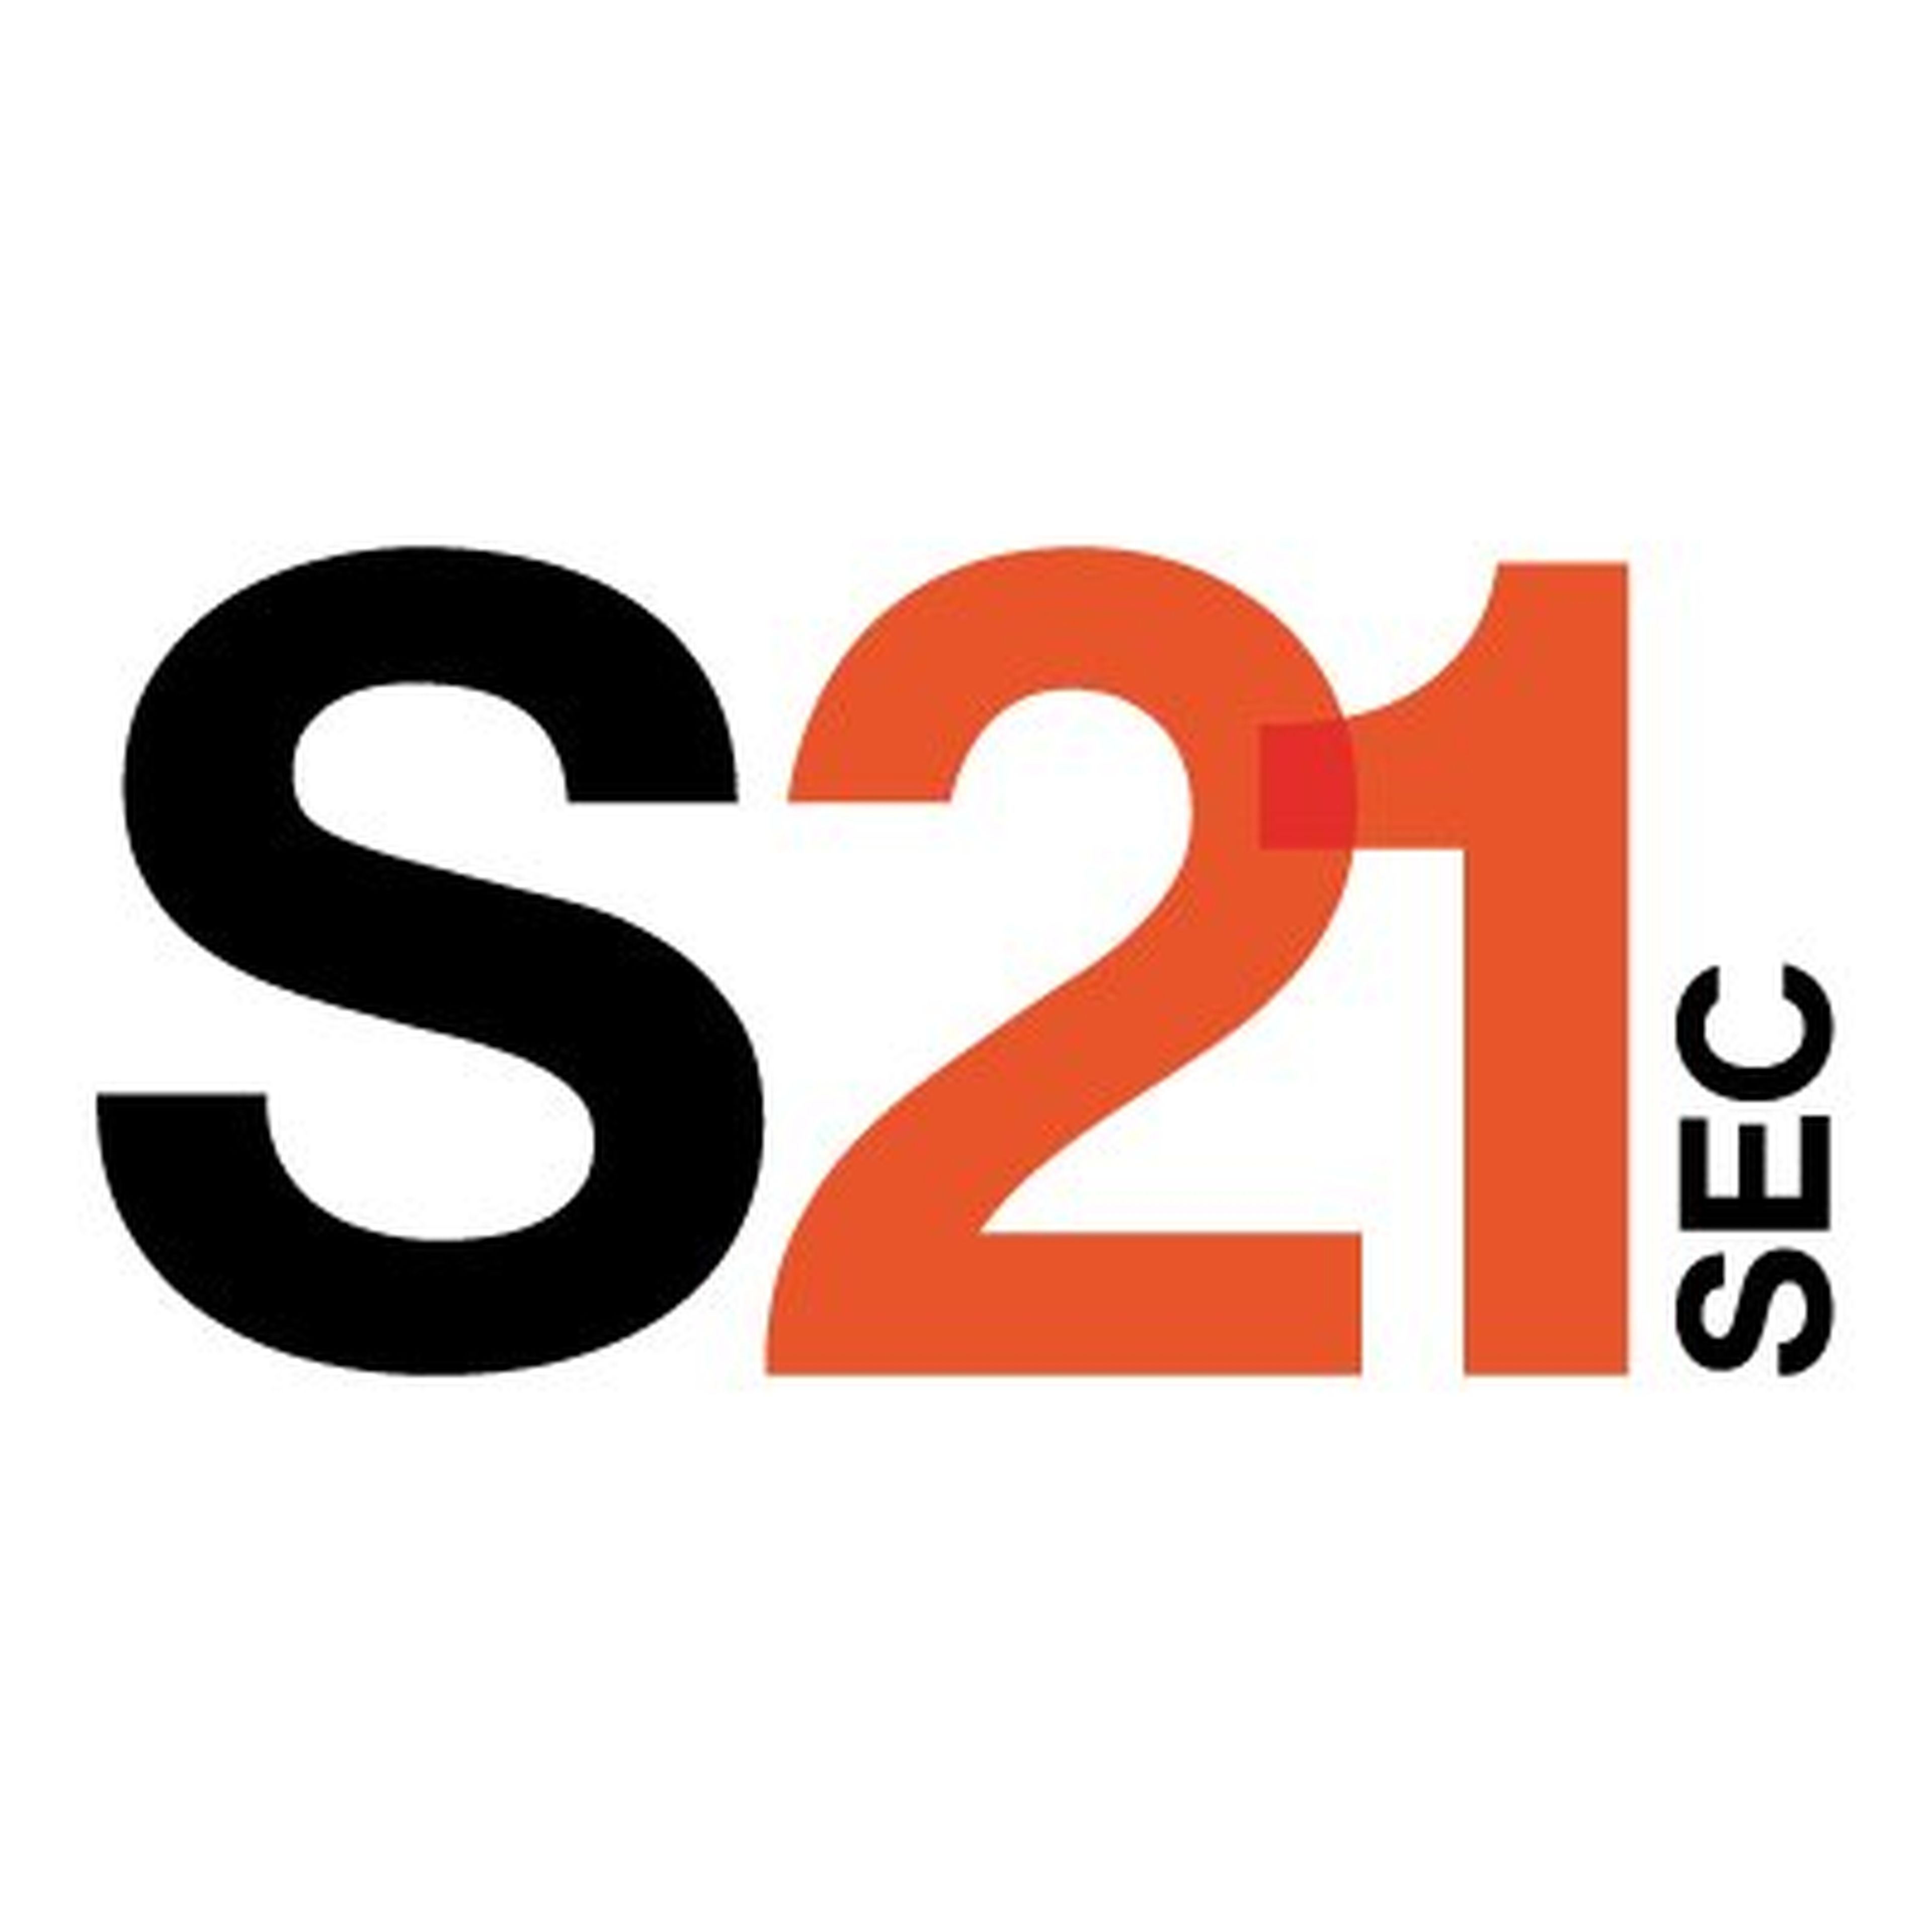 S21Sec